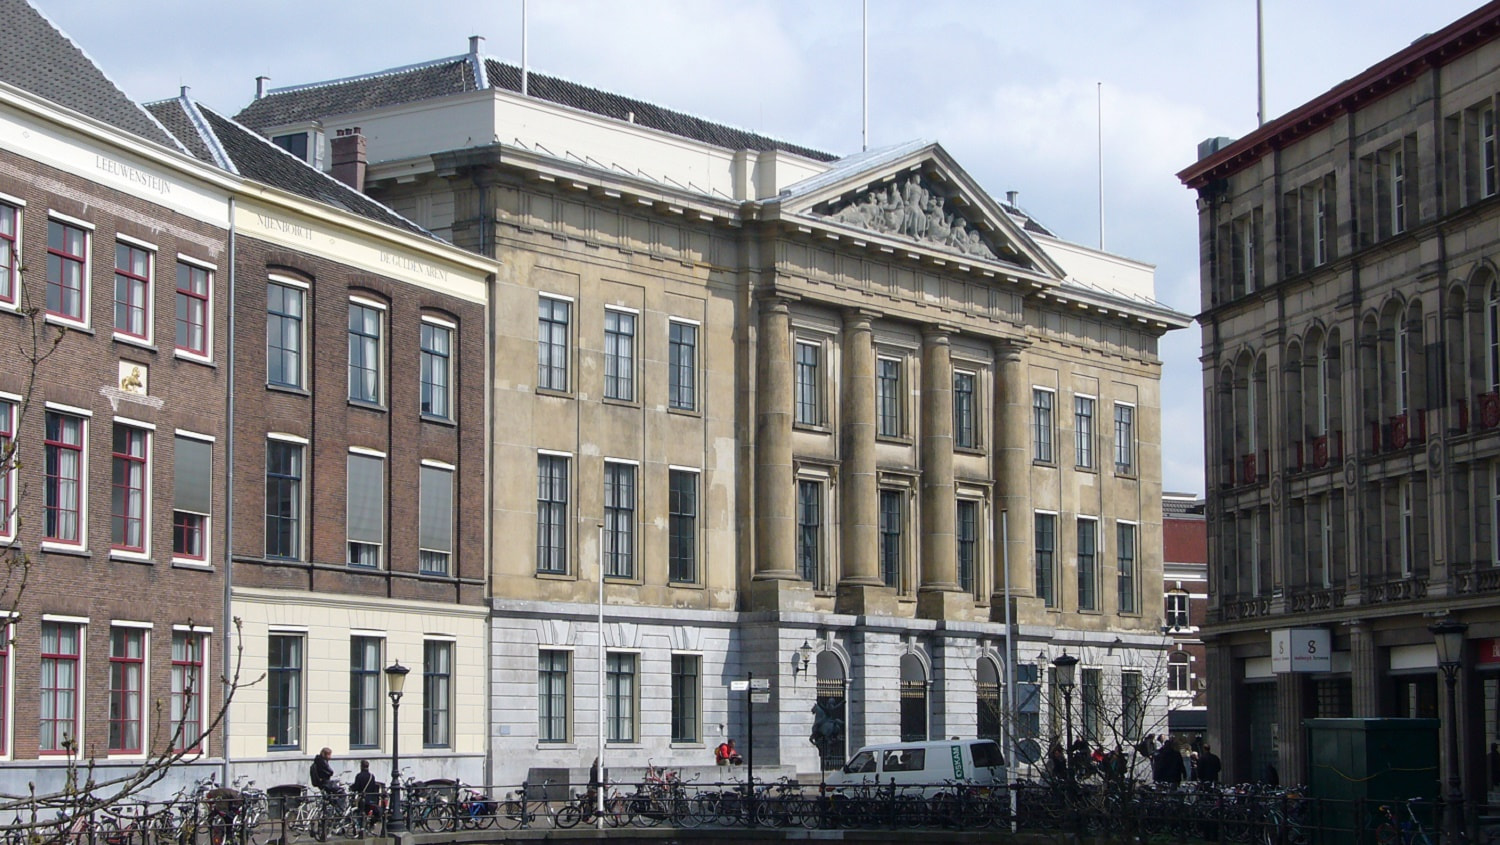 Stadhuis Utrecht inspiratievoorbeeld duurzaam gemeentelijk vastgoed